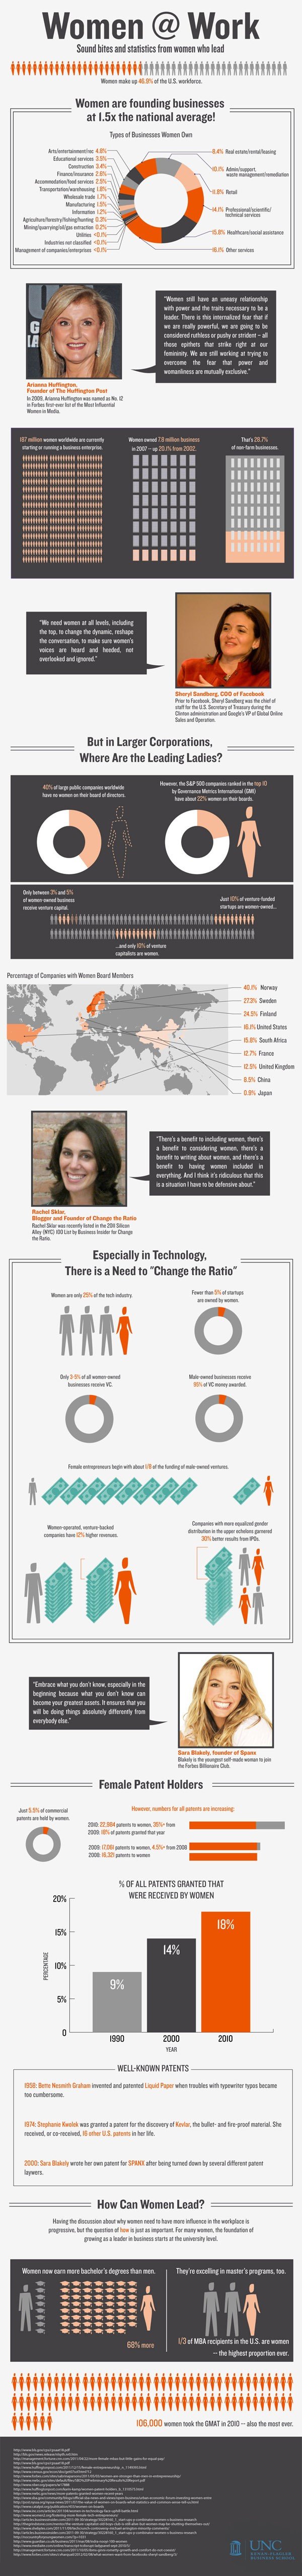 Working Women Infographic: Women @Work - ComplianceandSafety.com